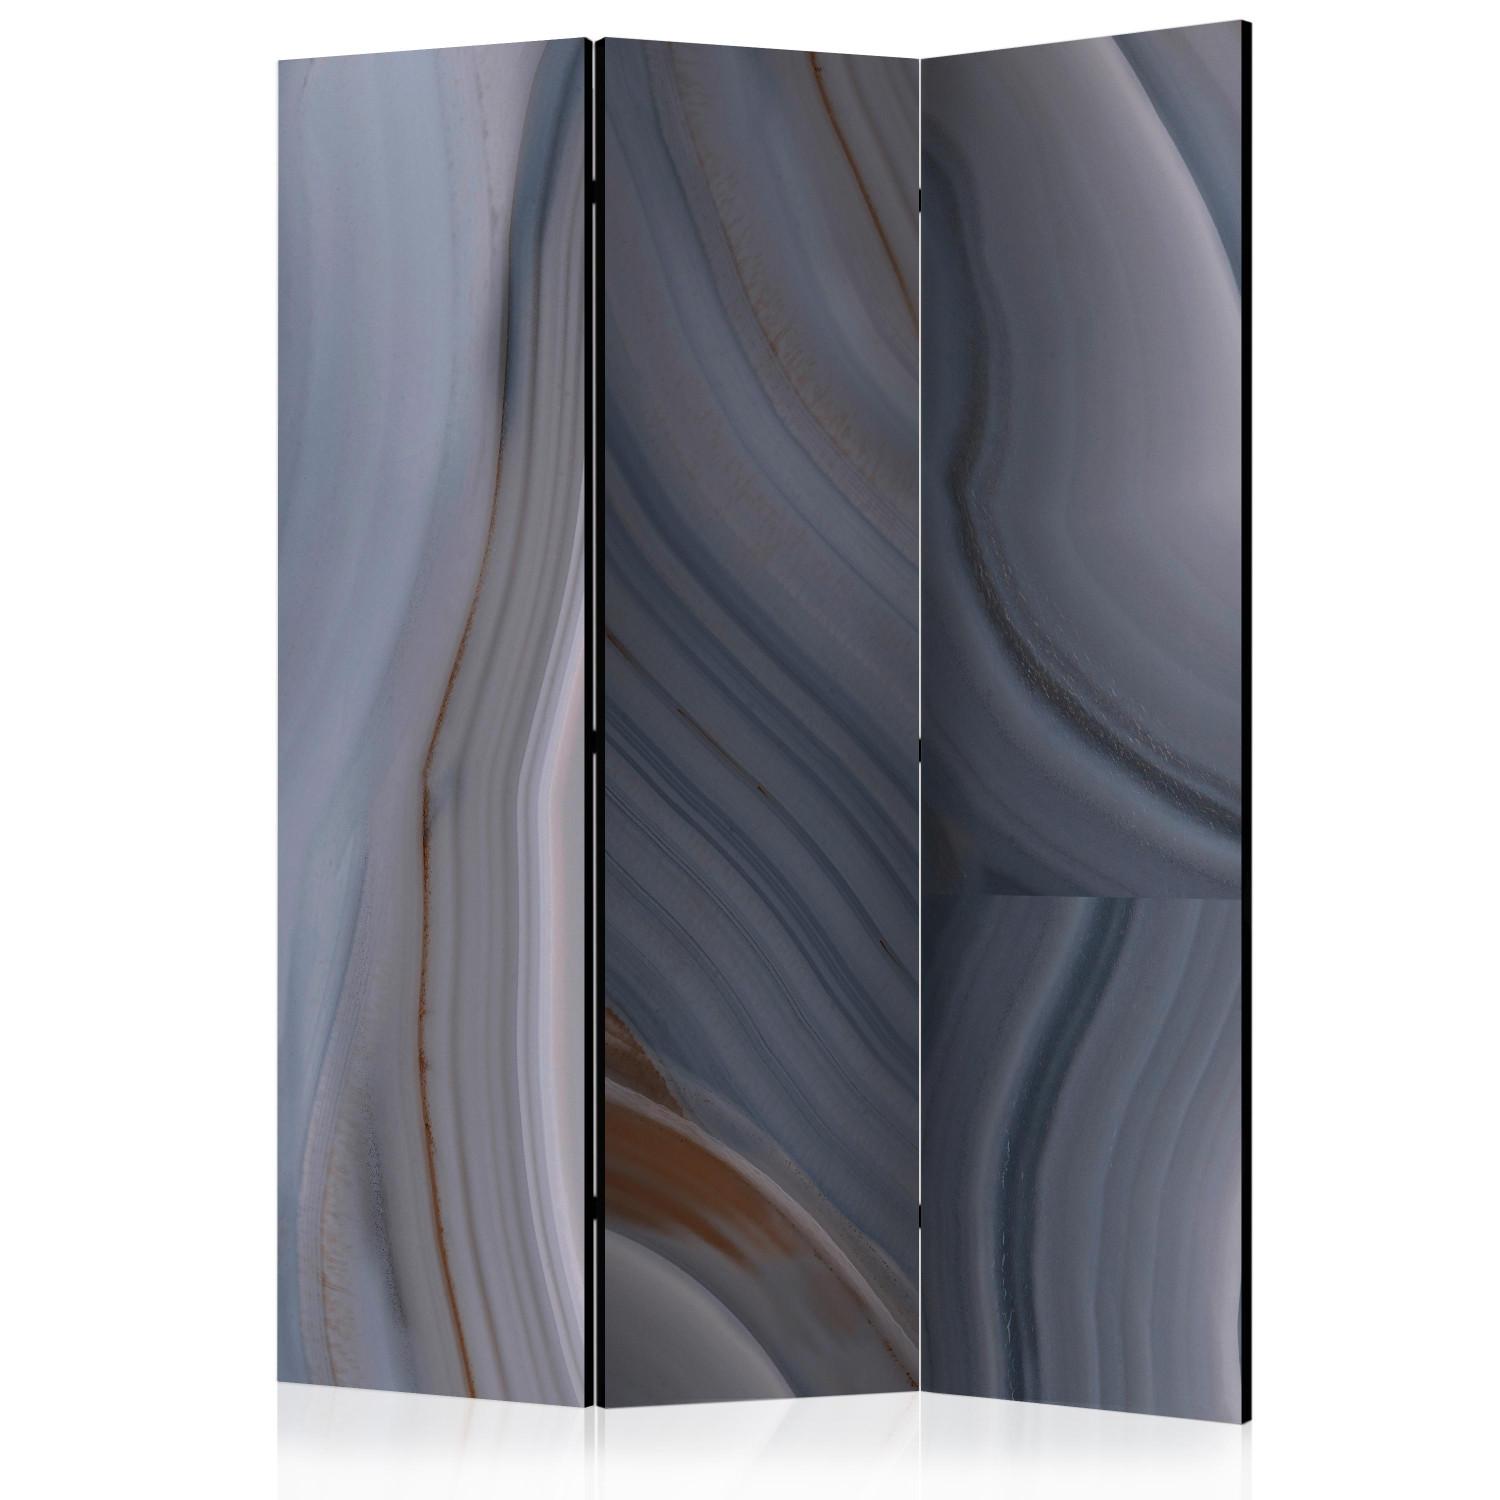 Biombo original Corriente marina (3 partes) - abstracción de mármol en tonos grises